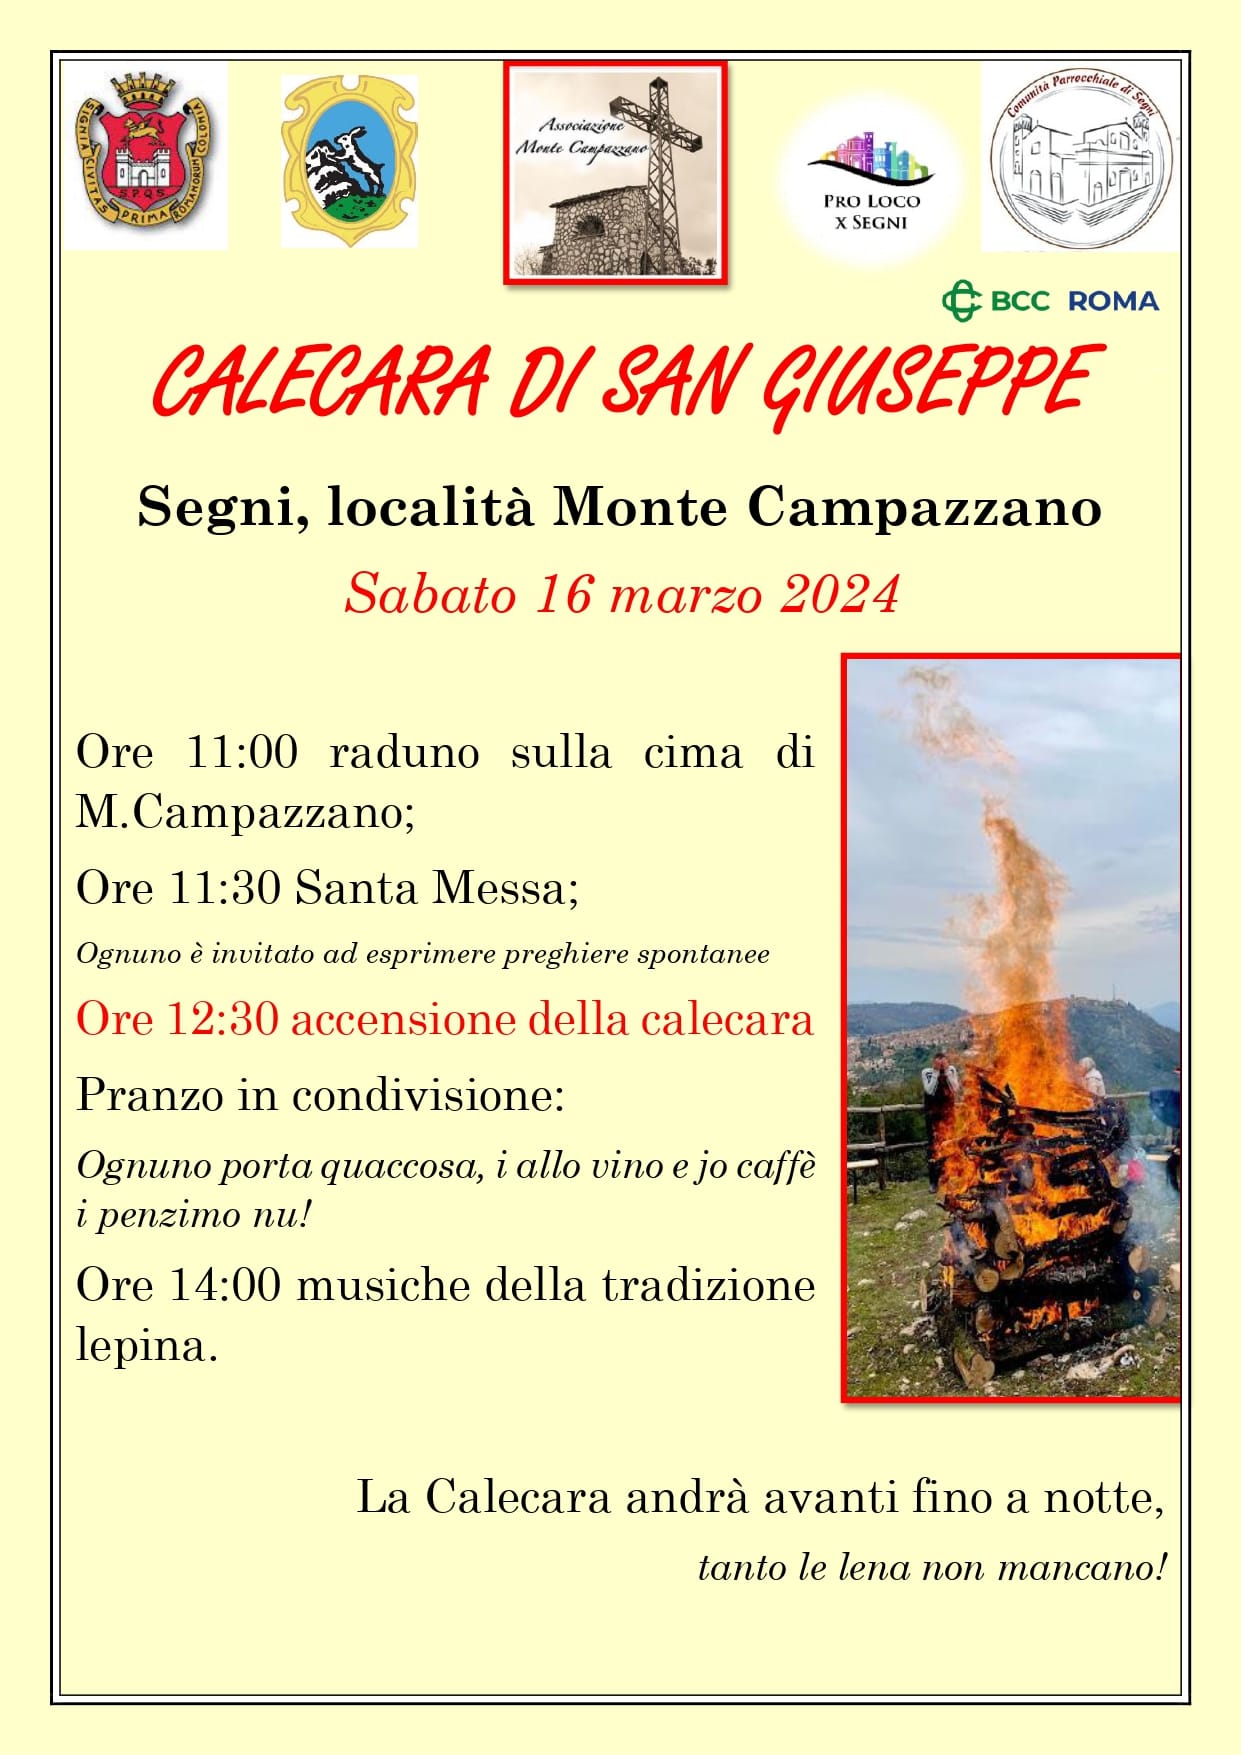 Segni: Calecara di San Giuseppe @ Monte Campazzano, Comune di Segni (RM)